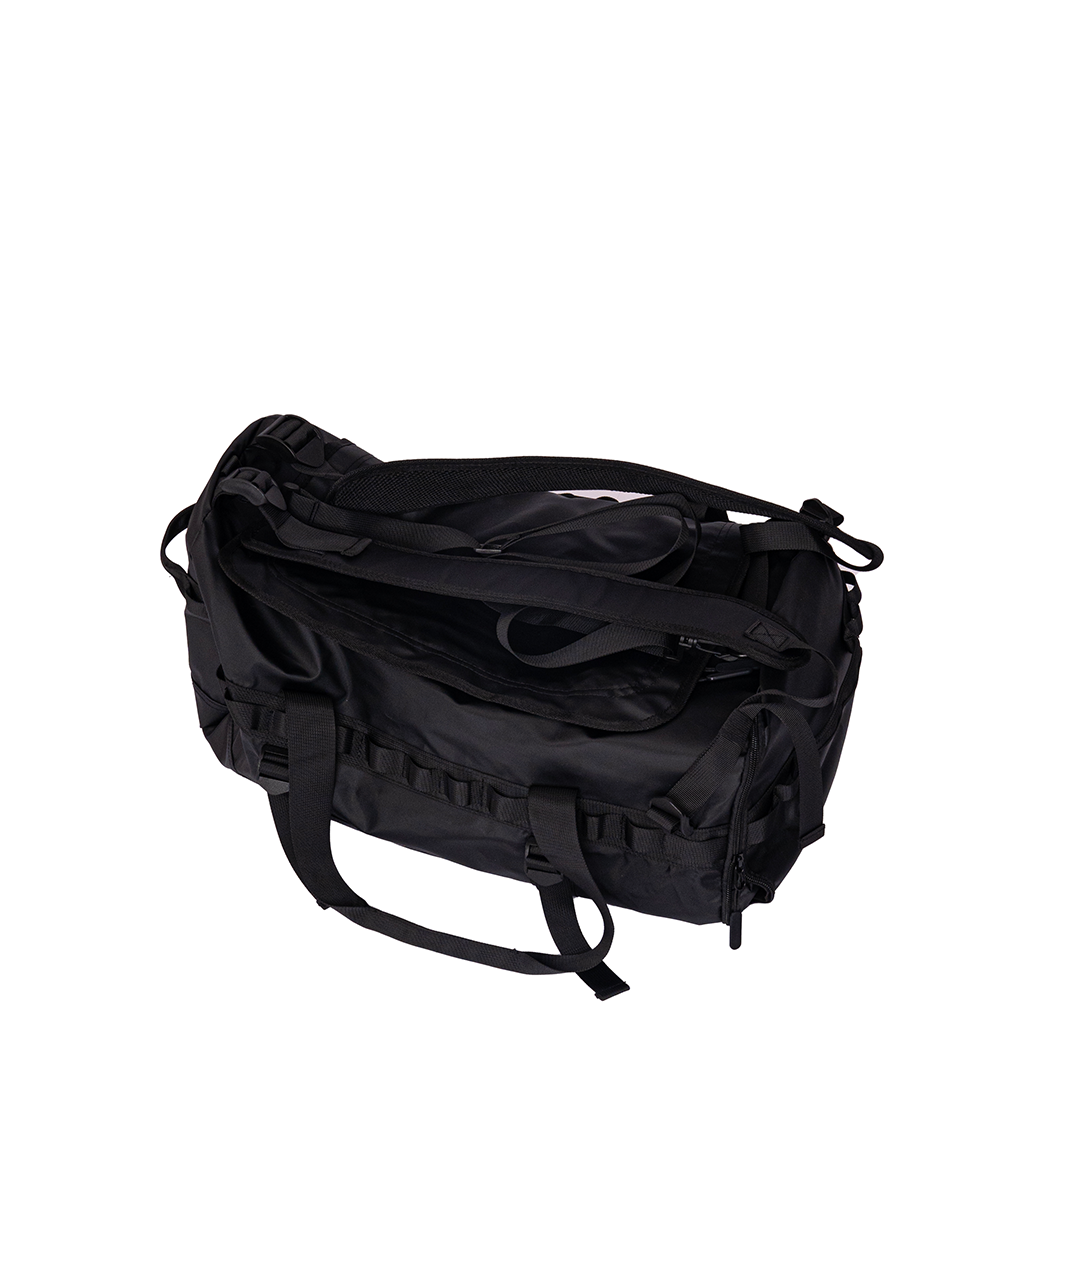 Carbon Series 2 way Sportsbag in Black